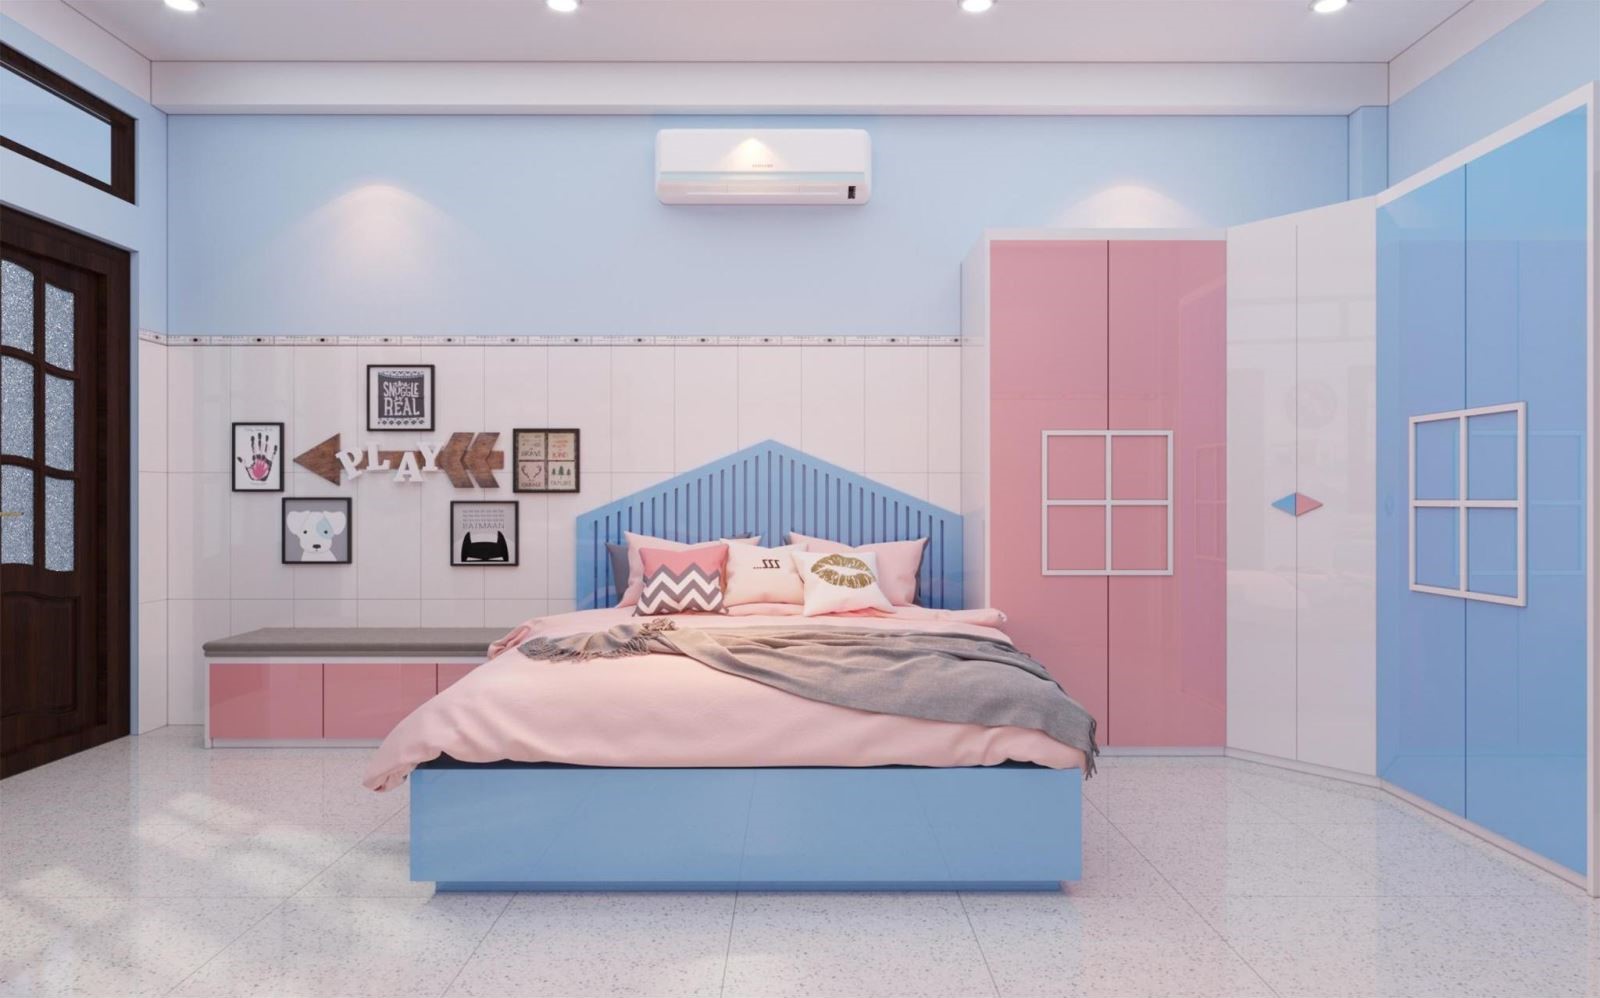 5 nguyên tắc thiết kế phòng ngủ cho bé mà phụ huynh cần biết